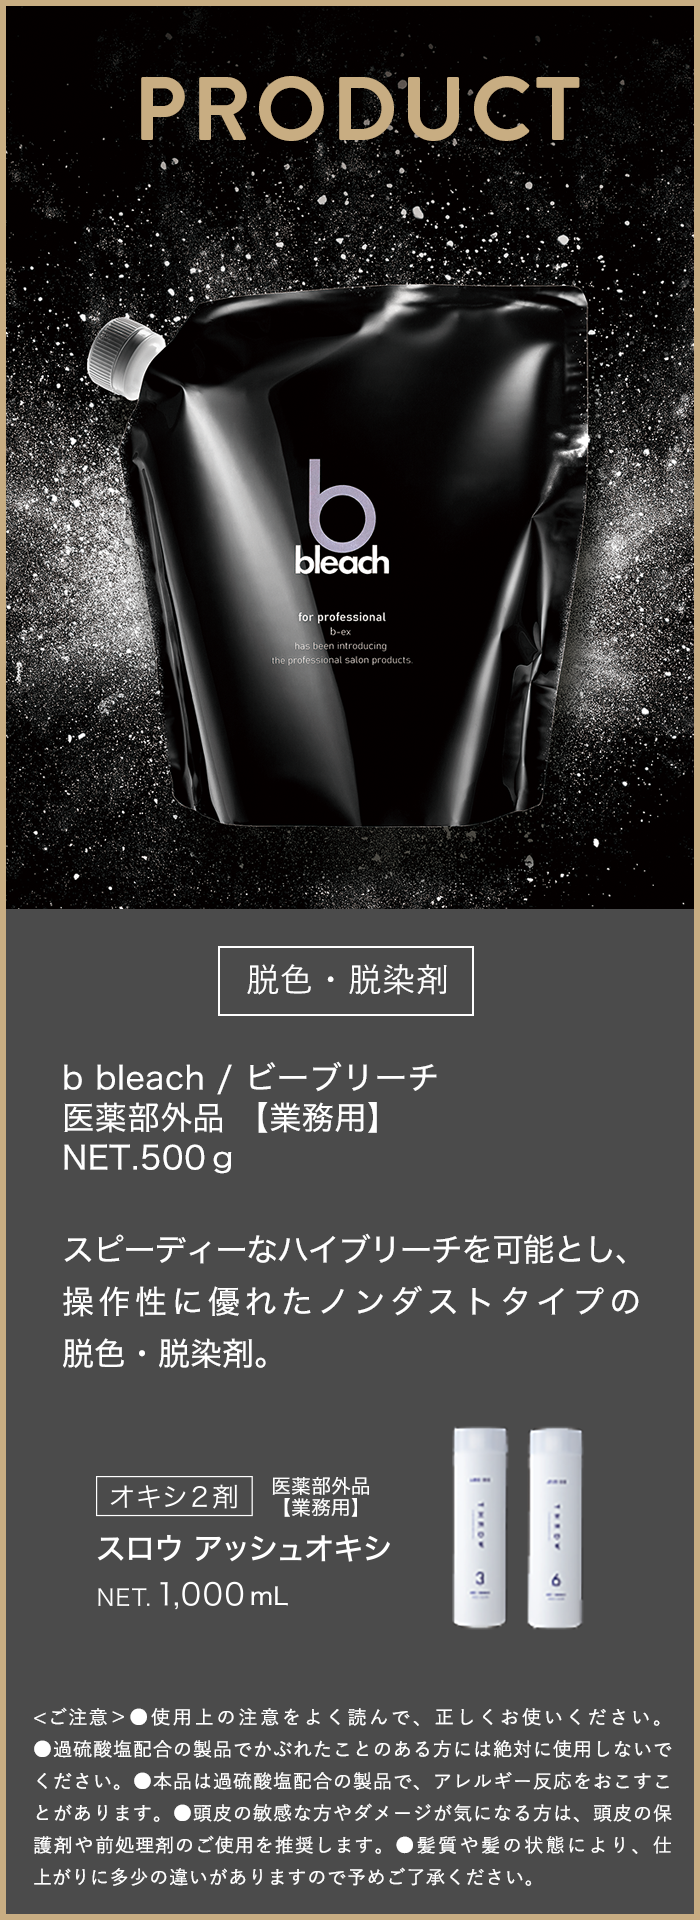 b-bleach product